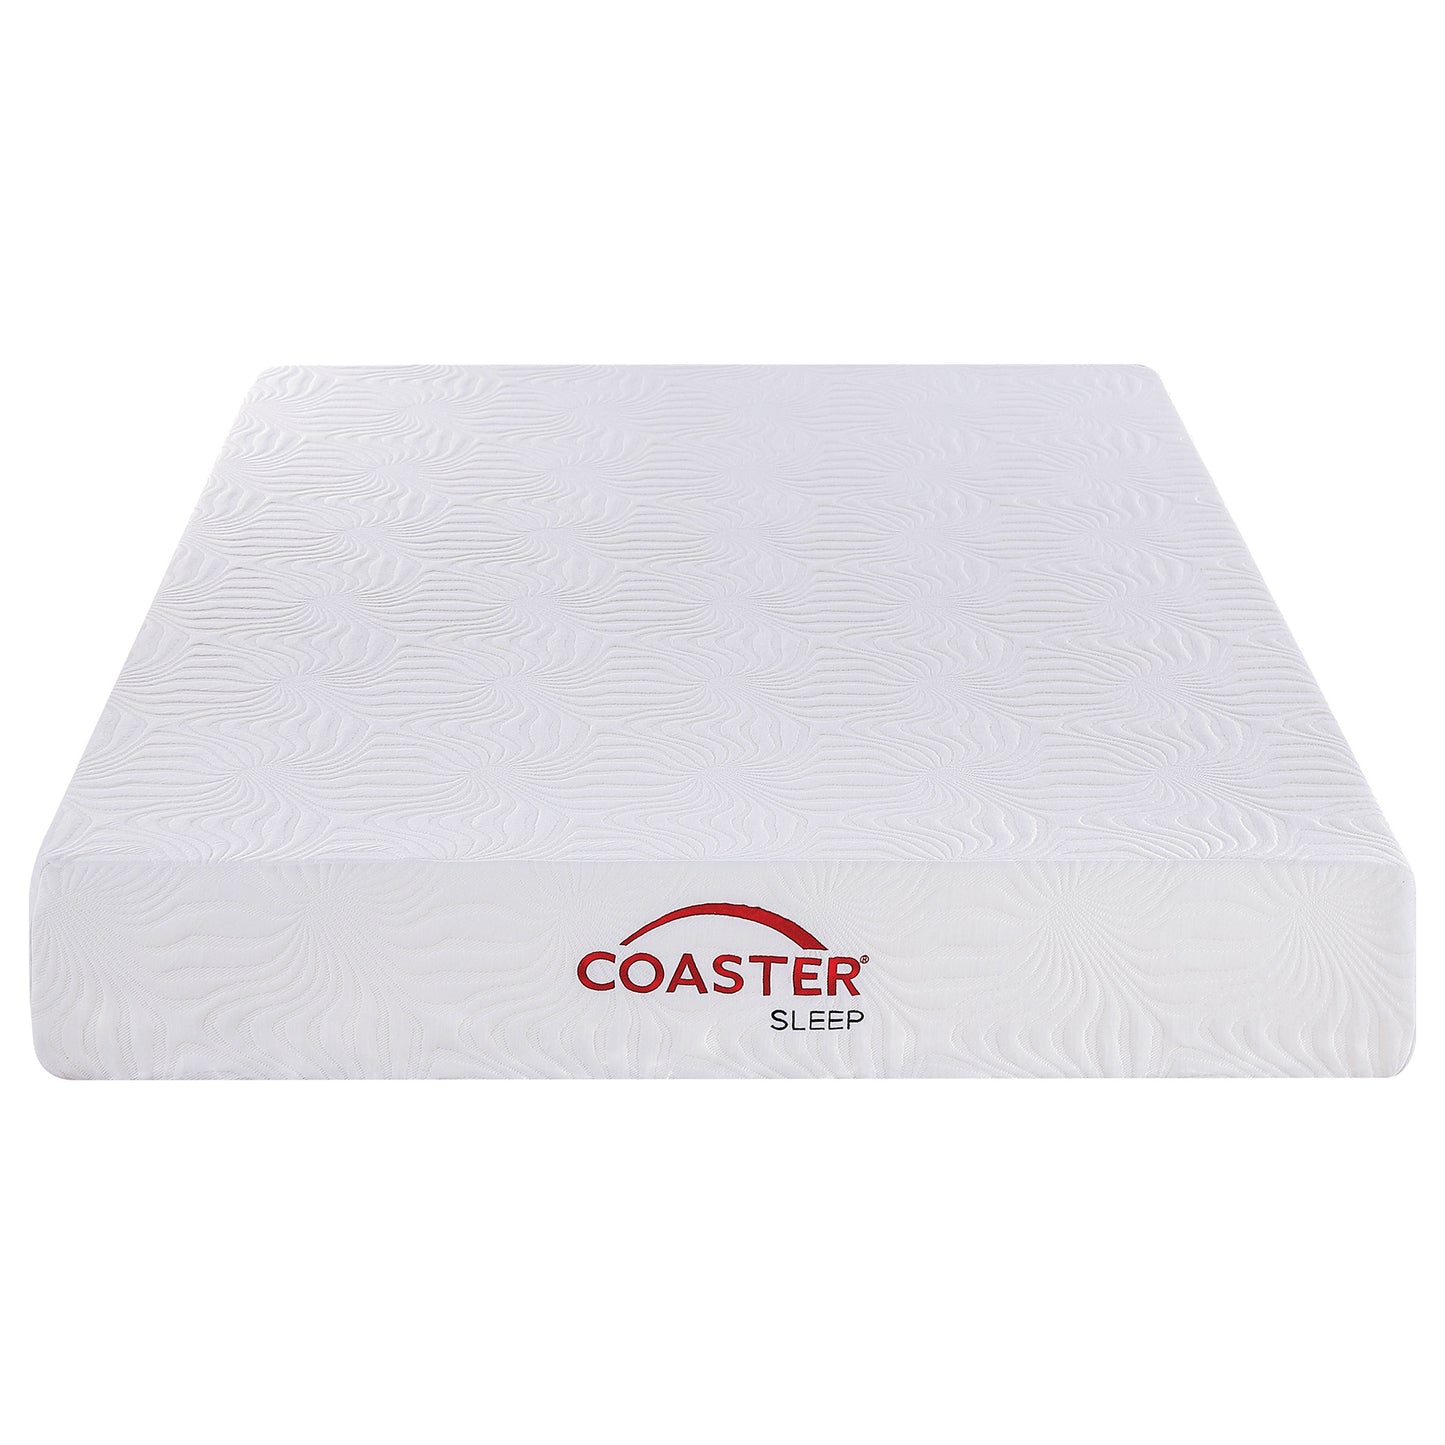 10" twin extra long memory foam mattress